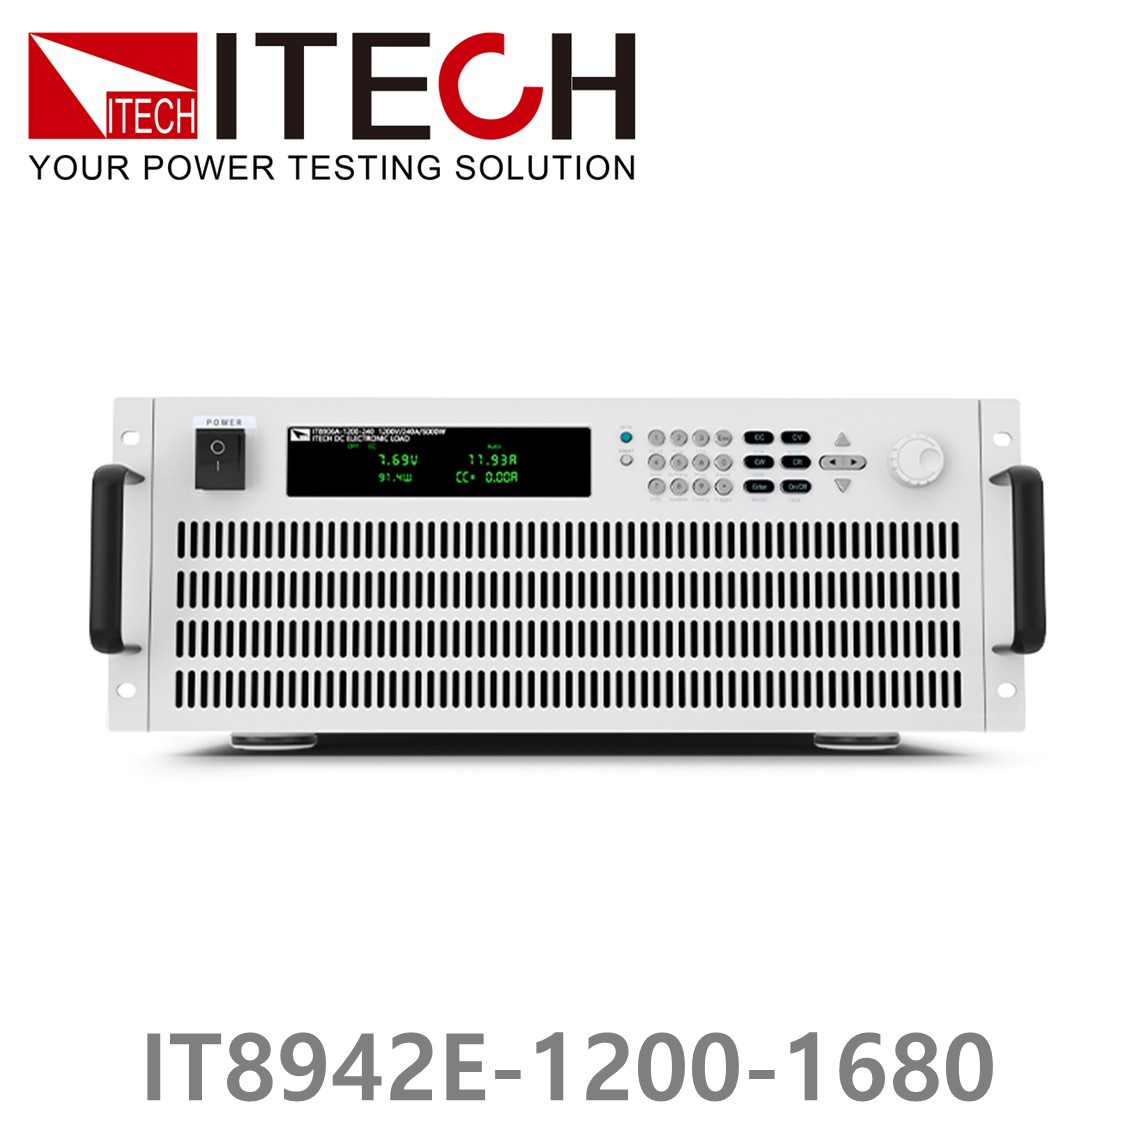 [ ITECH ] IT8942E-1200-1680  고성능 고전력 DC 전자로드 1200V /1680A/42kW (37U)